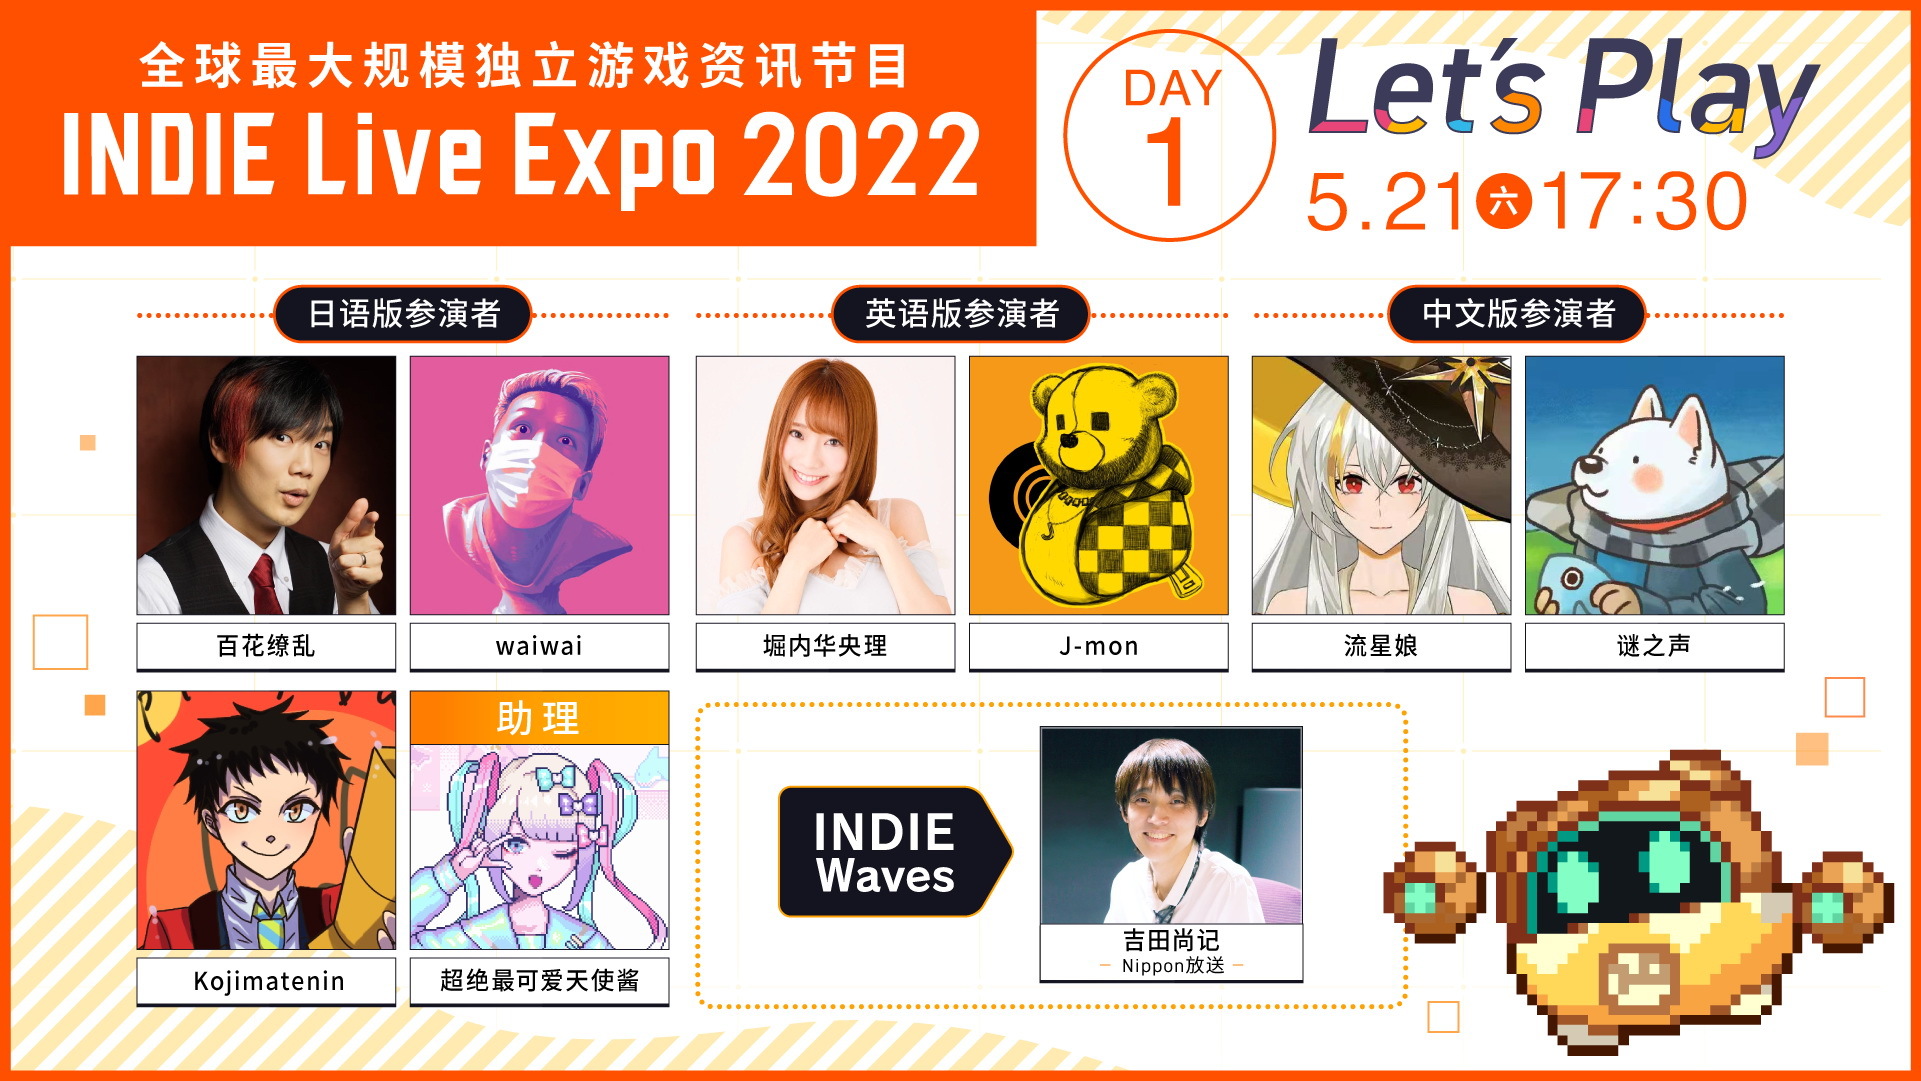 [閒聊] 獨立遊戲線上節目INDIE Live Expo 2022 本週末登場